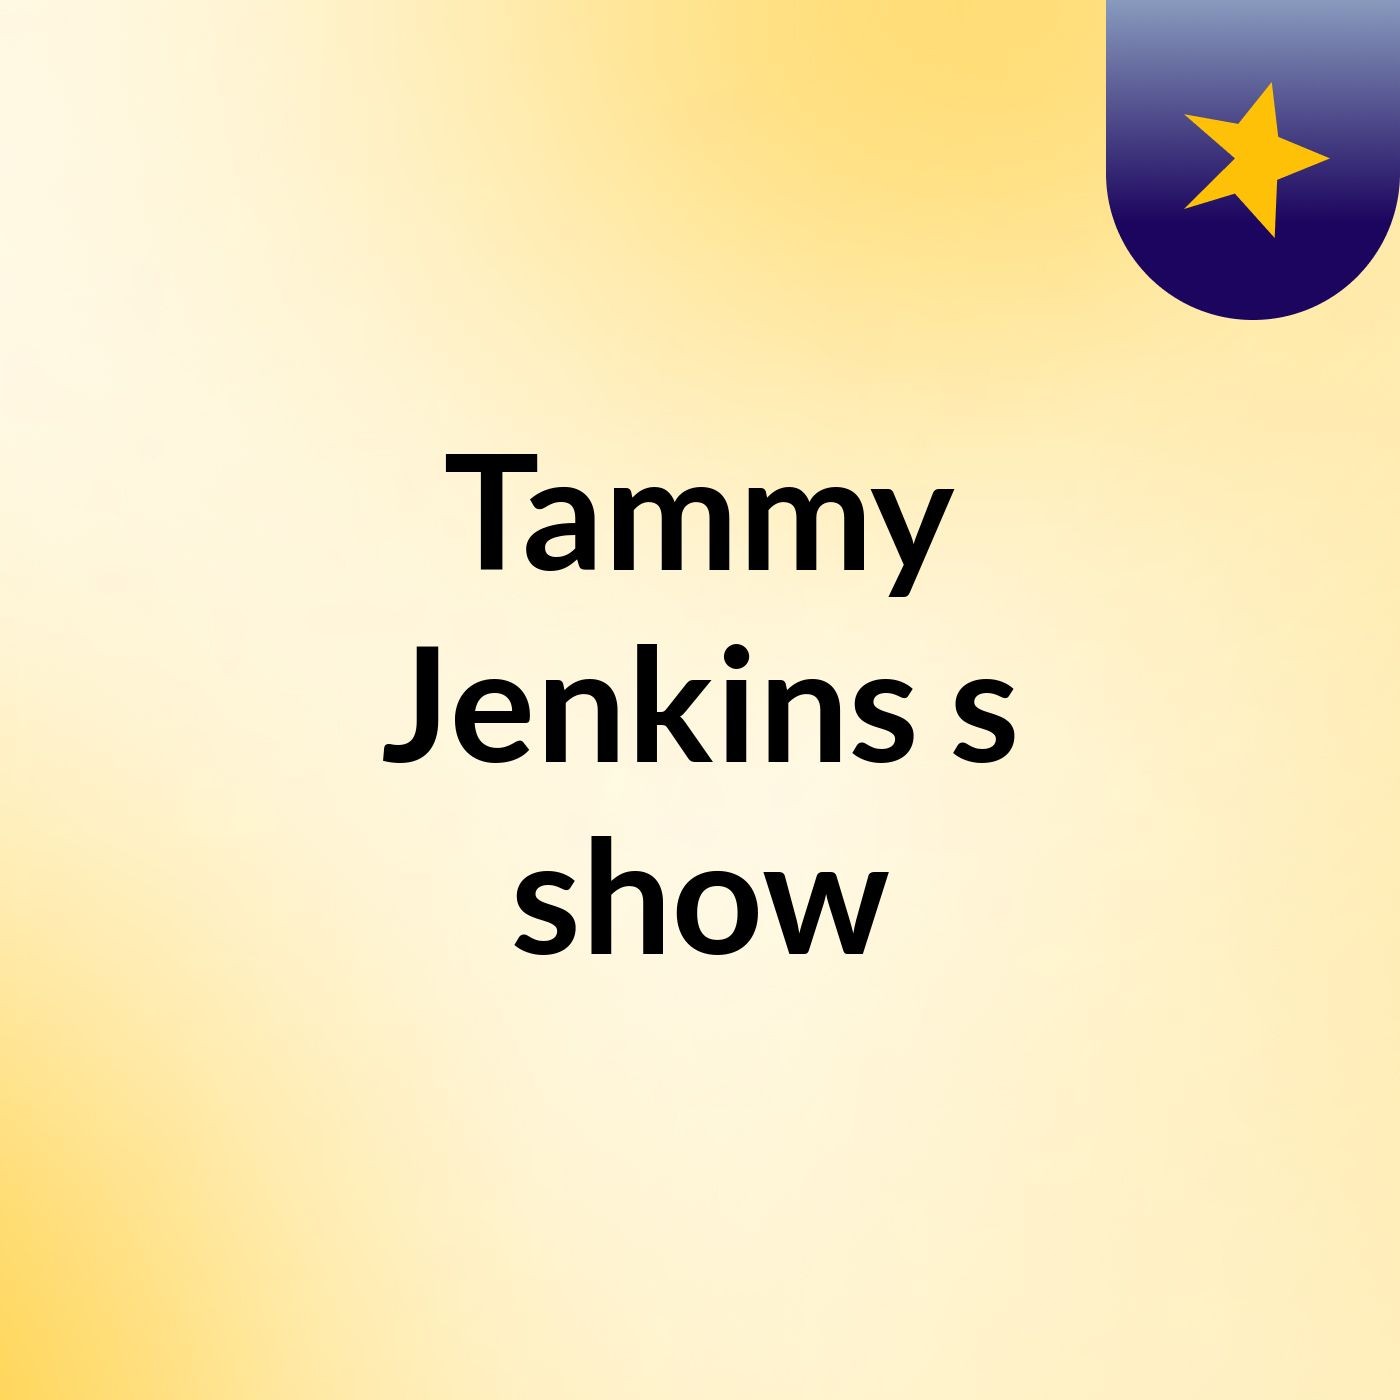 Tammy Jenkins's show